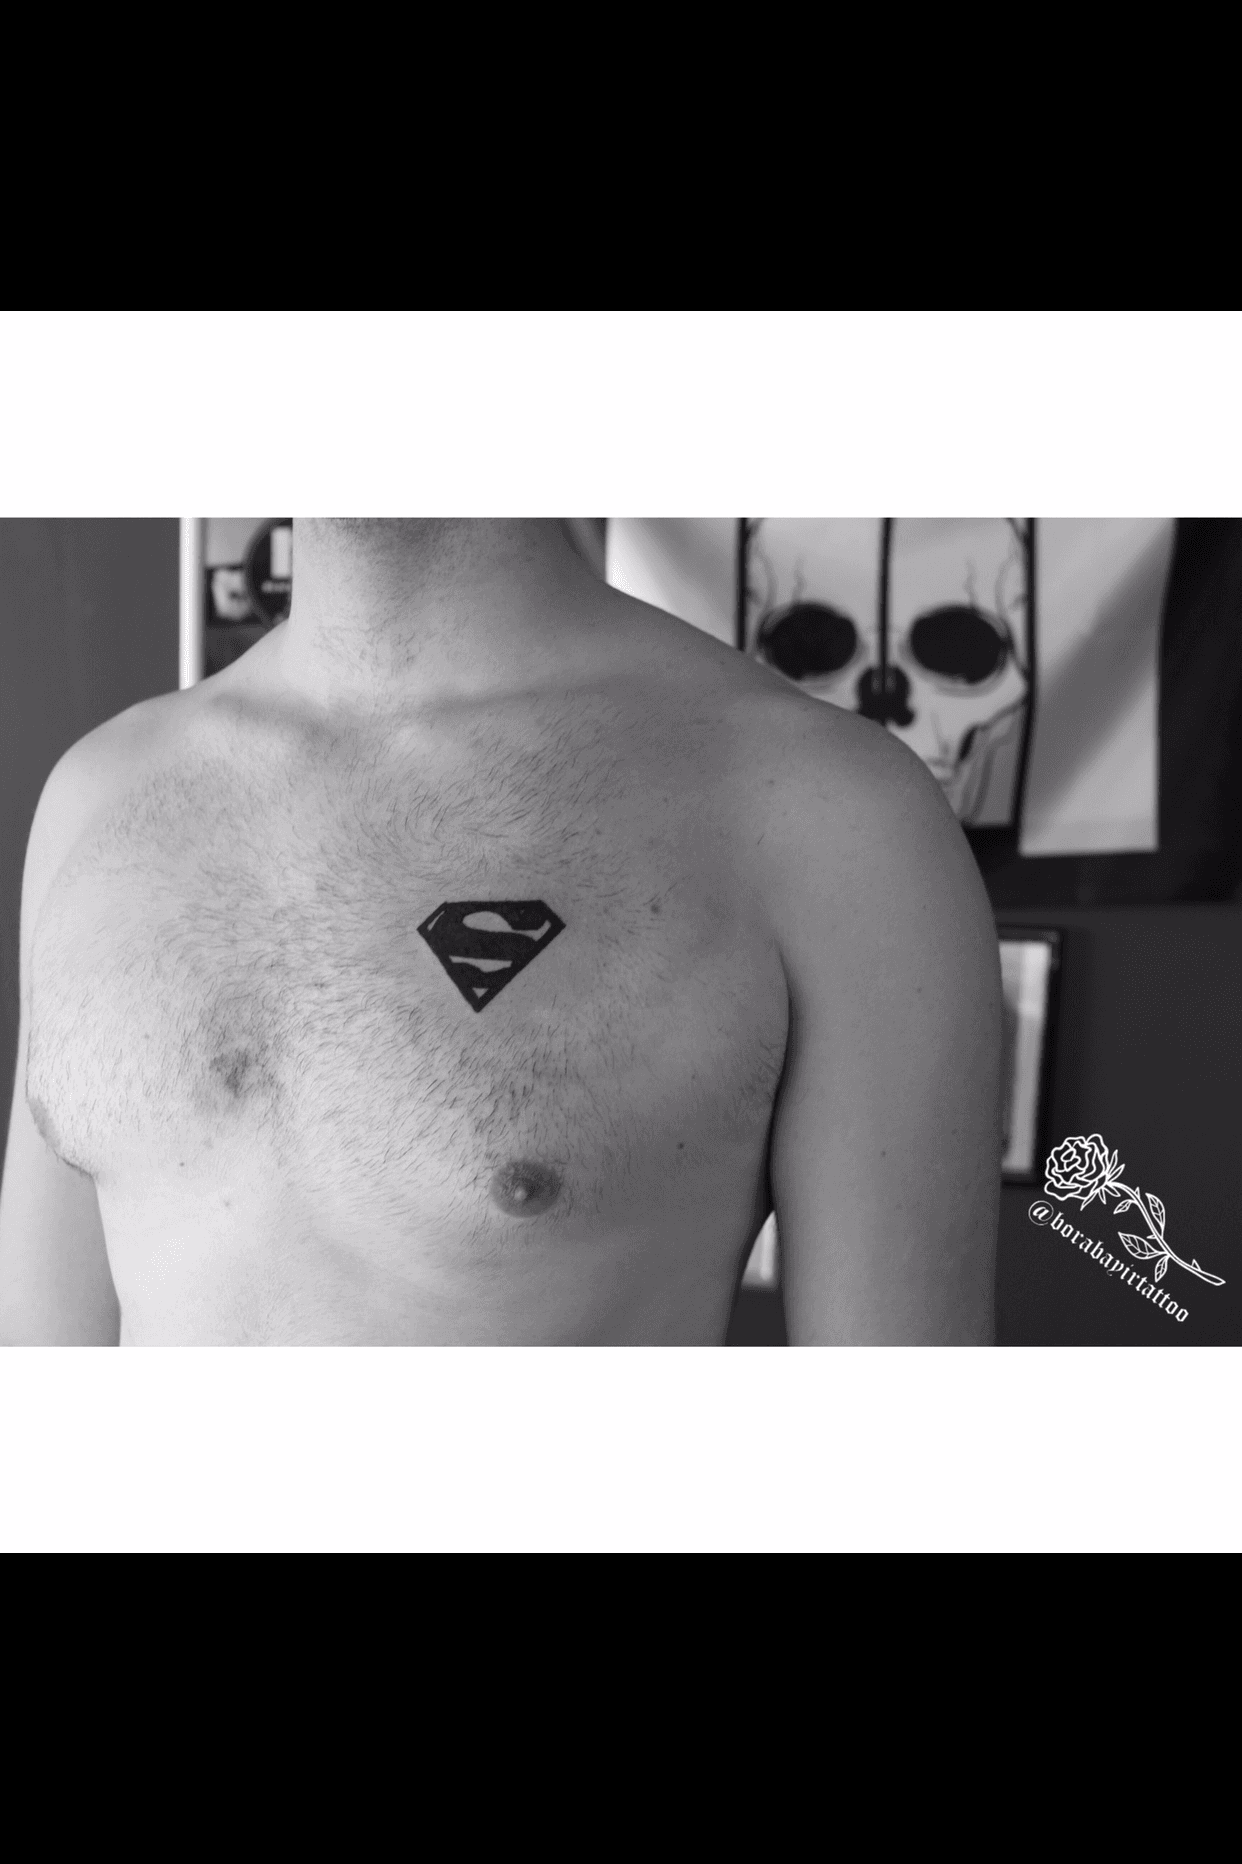 My New Superman Tattoo by ssjzero on DeviantArt